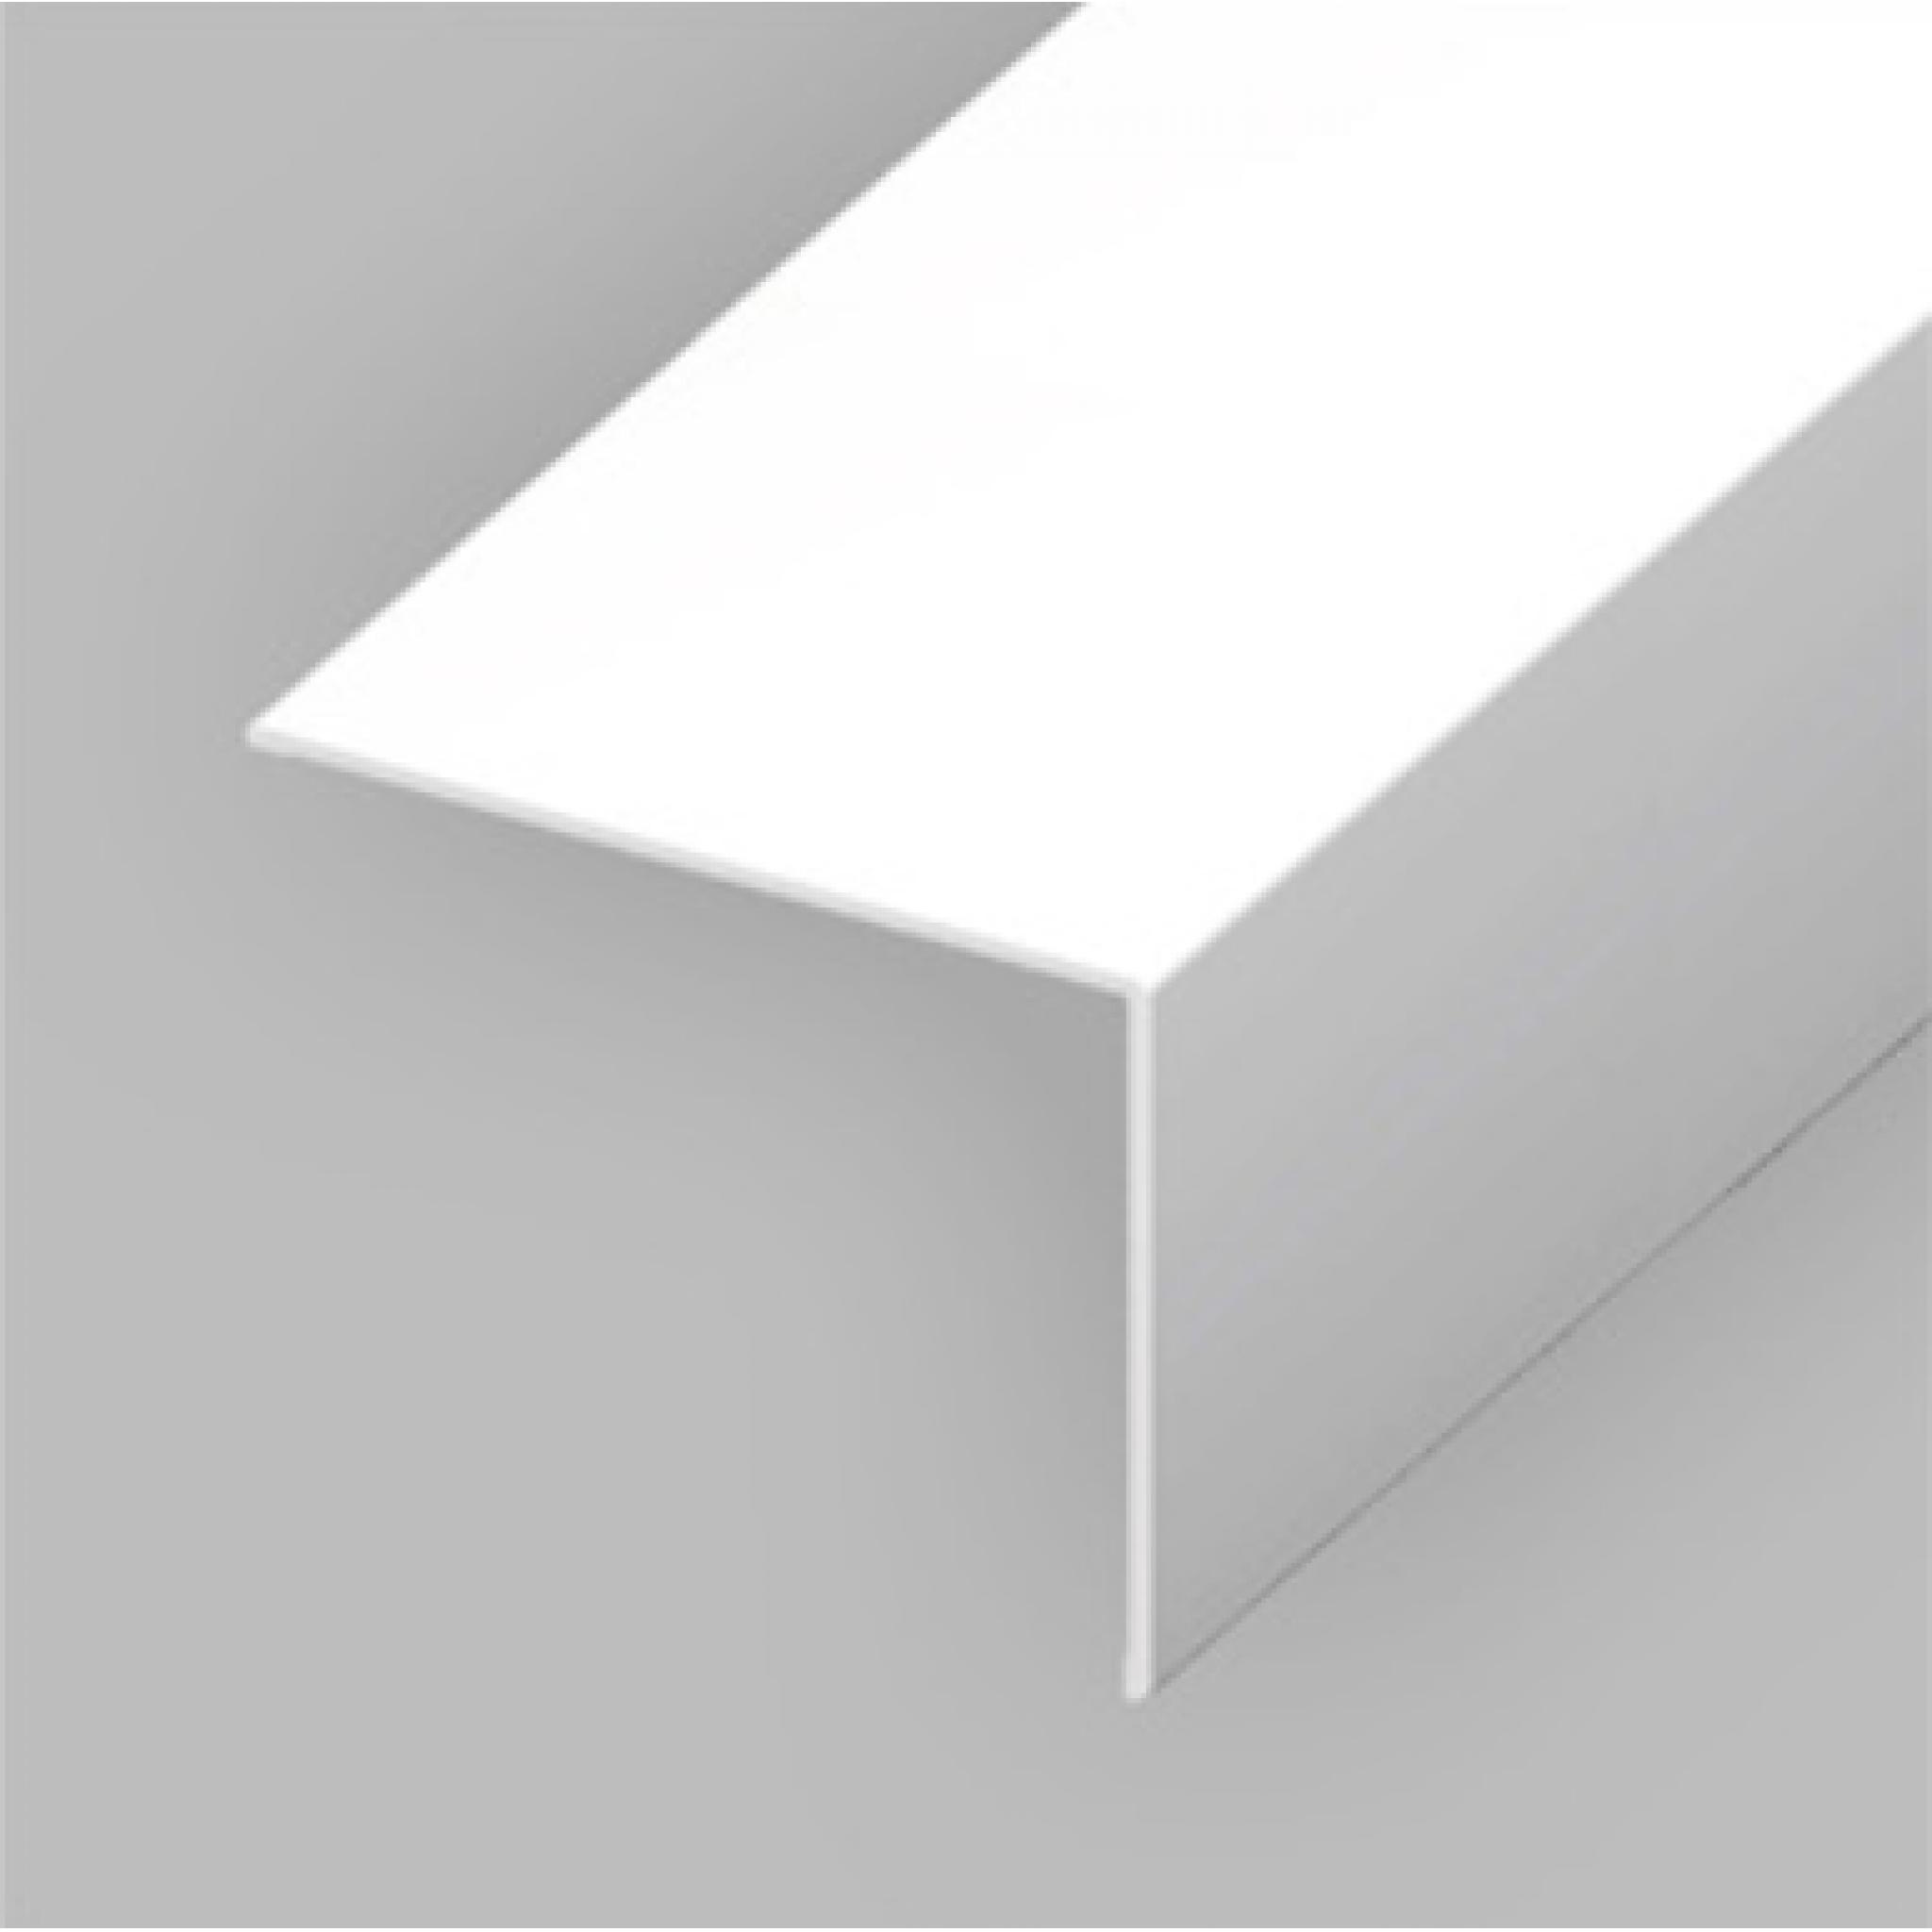 White PVC 25mm x 25mm Rigid Angle